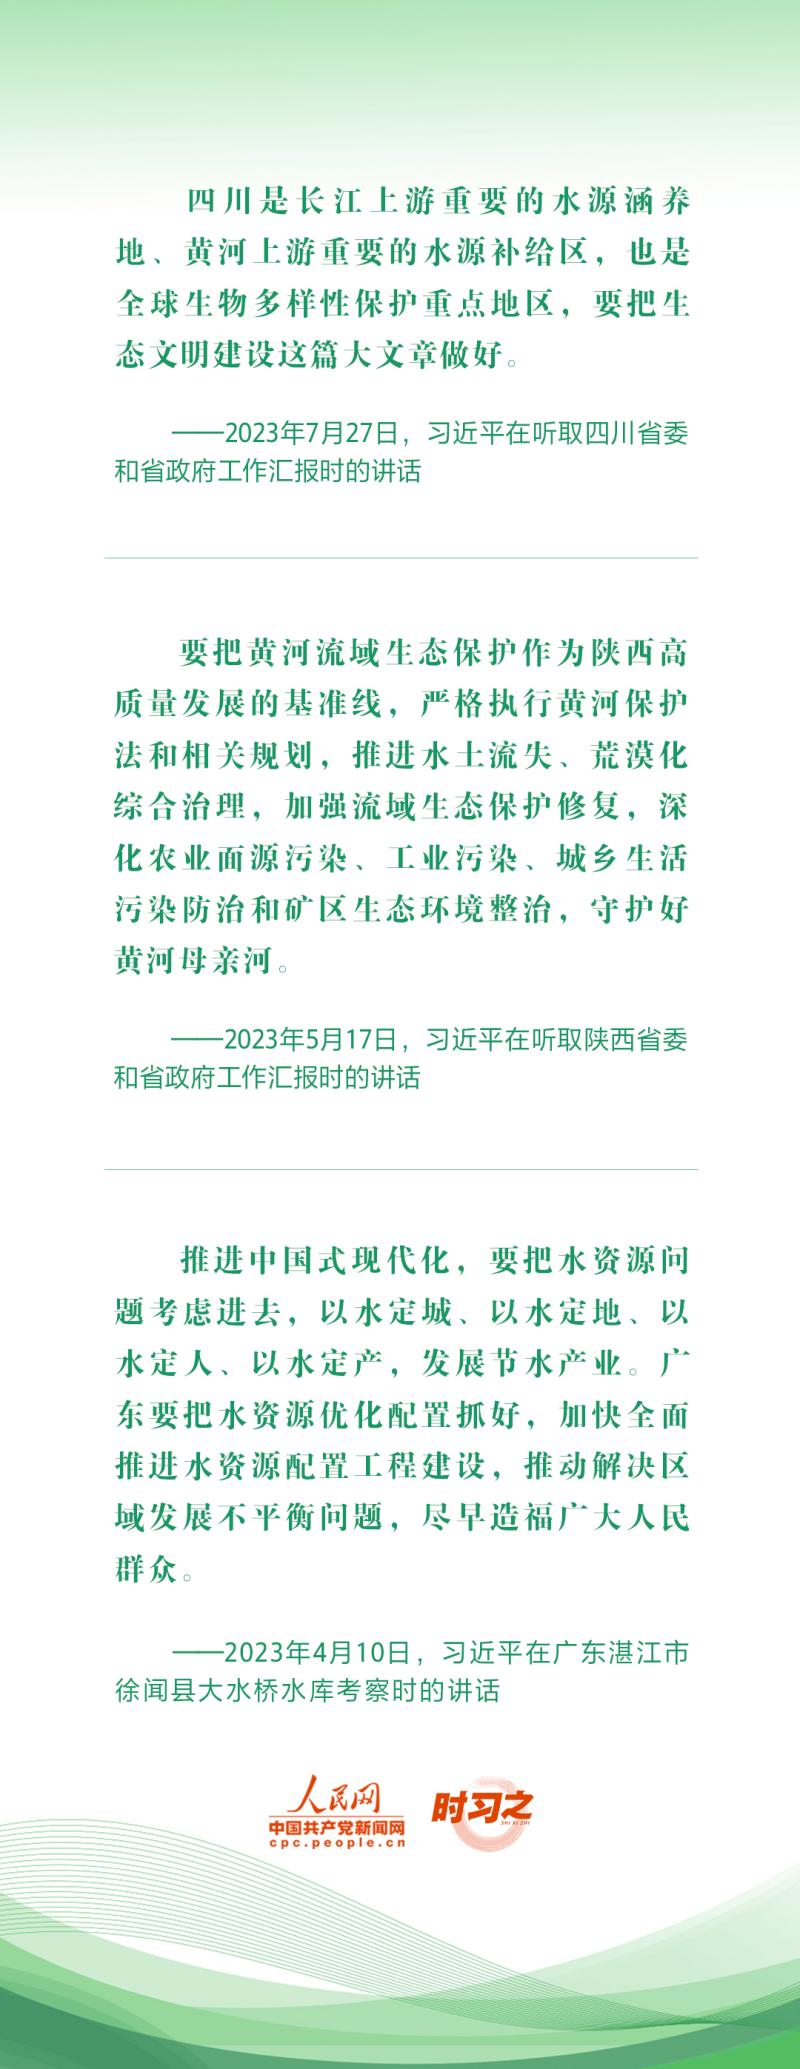 绿水青山映初心总书记心系“绿色中国”总书记心系“绿色中国”--独家稿件|绿水青山映初心|